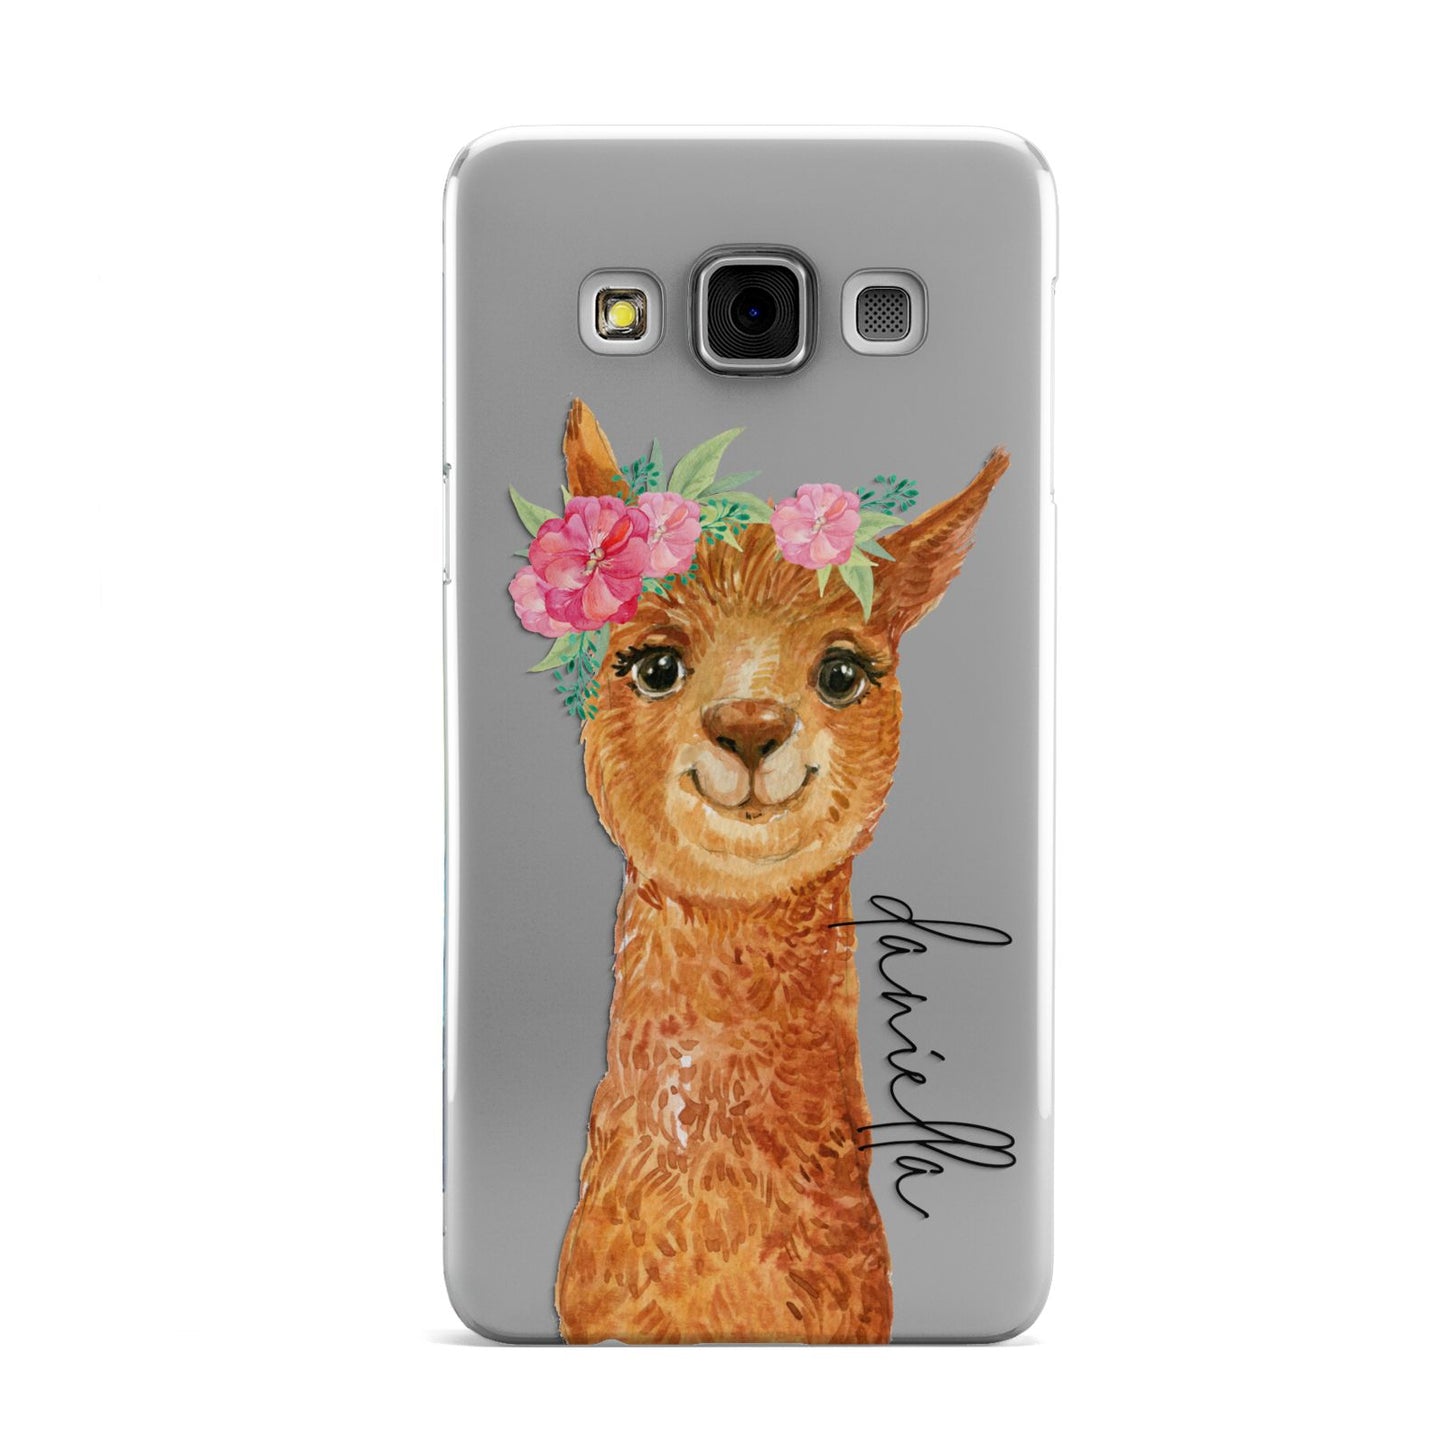 Personalised Llama Samsung Galaxy A3 Case